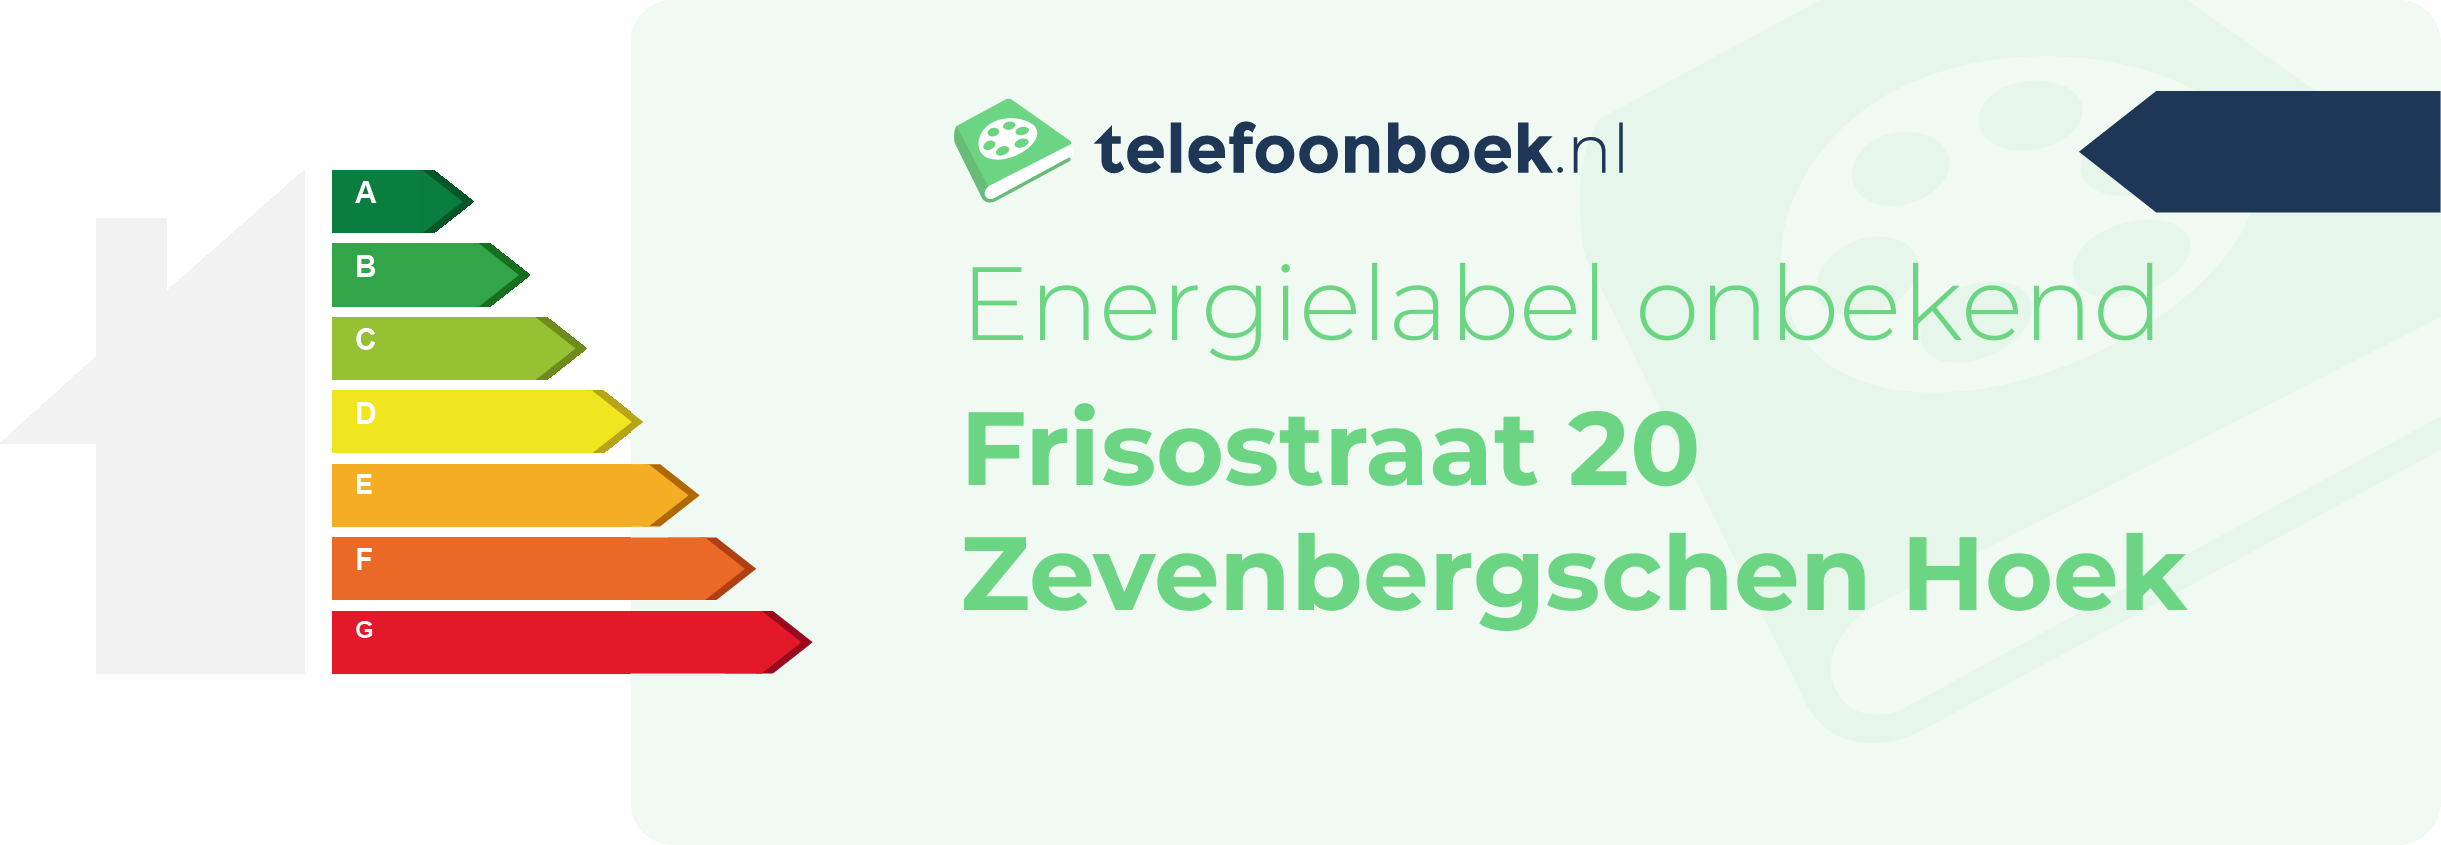 Energielabel Frisostraat 20 Zevenbergschen Hoek